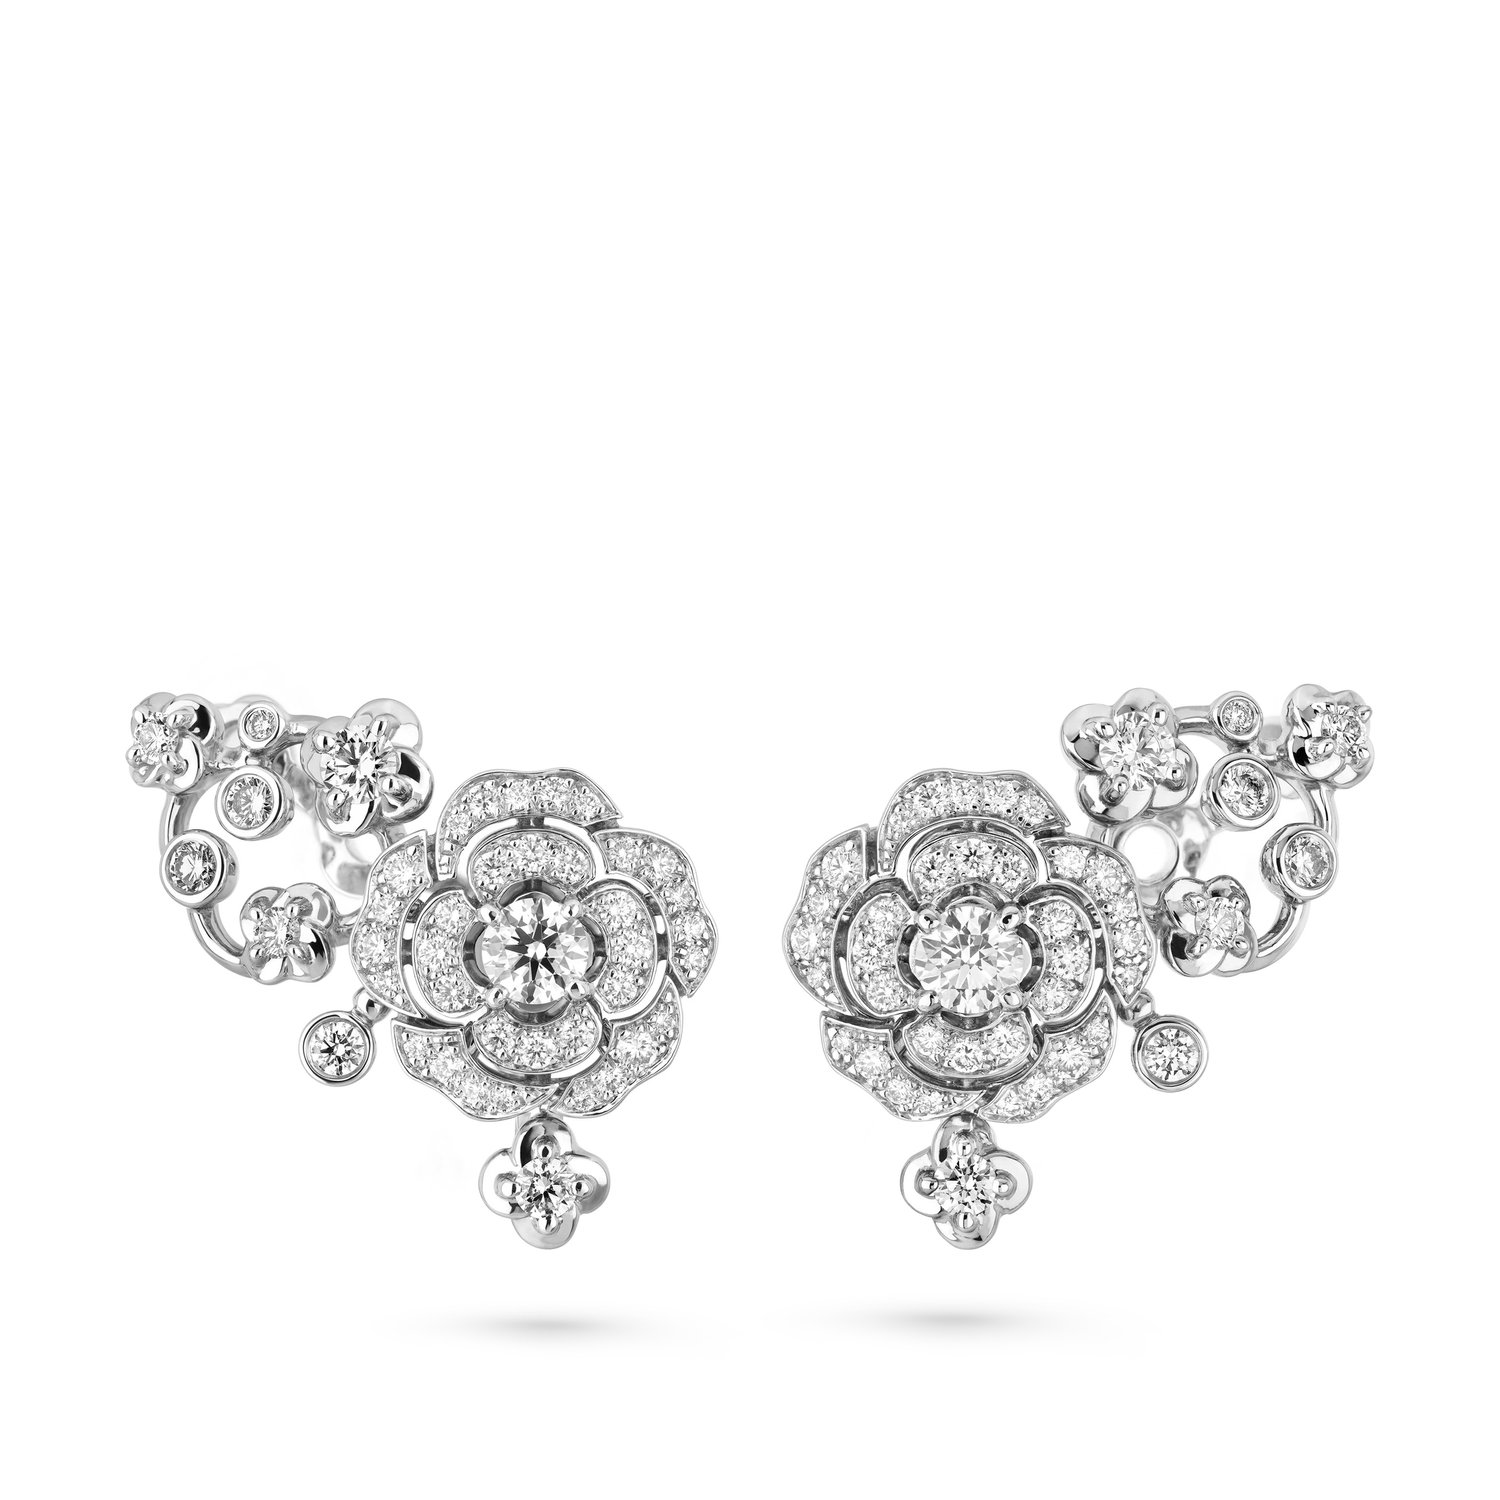 Chanel Camélia Précieux Earrings - 18K White Gold, Diamonds - Color: Blanc